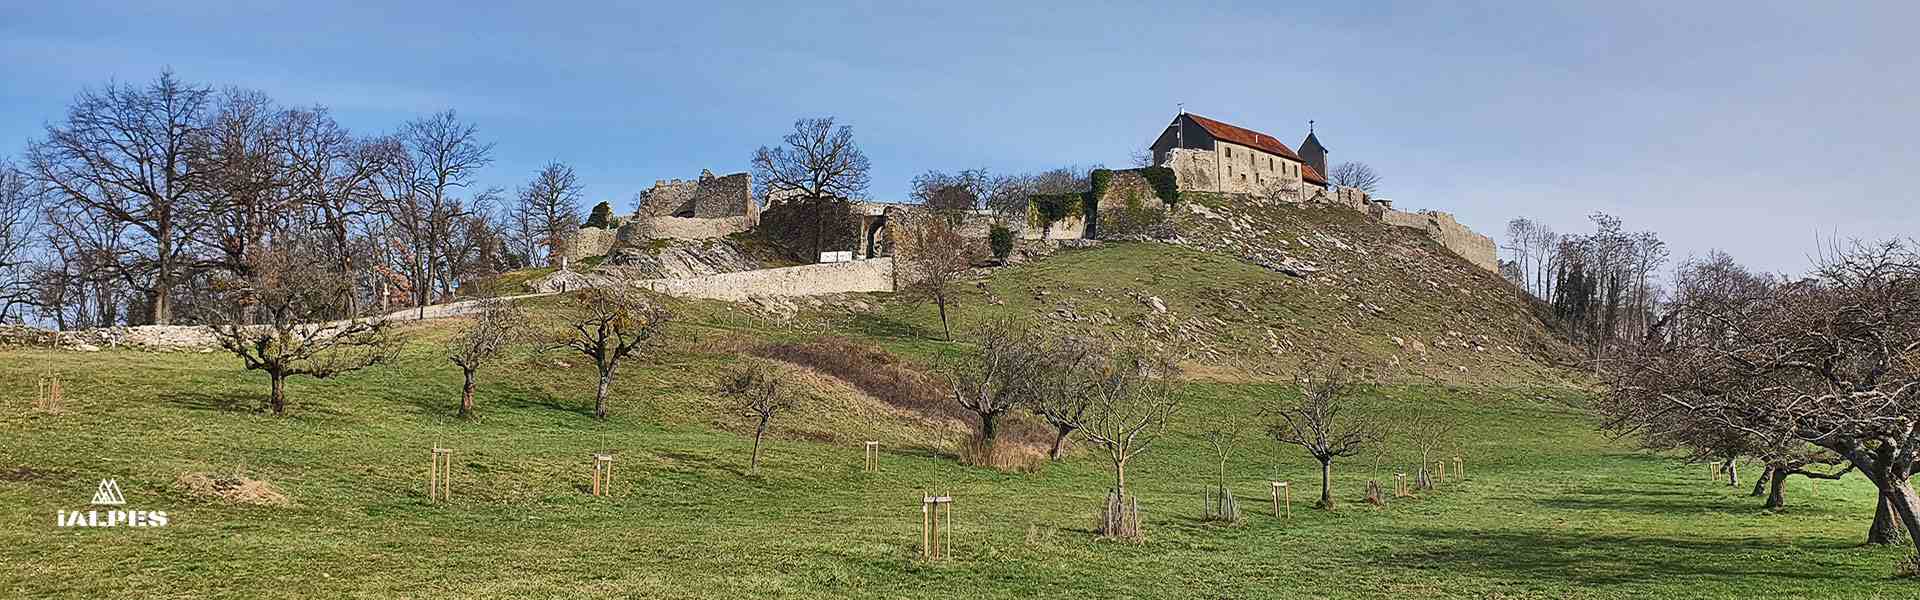 Château-Vieux d'Allinges, Haute-Savoie